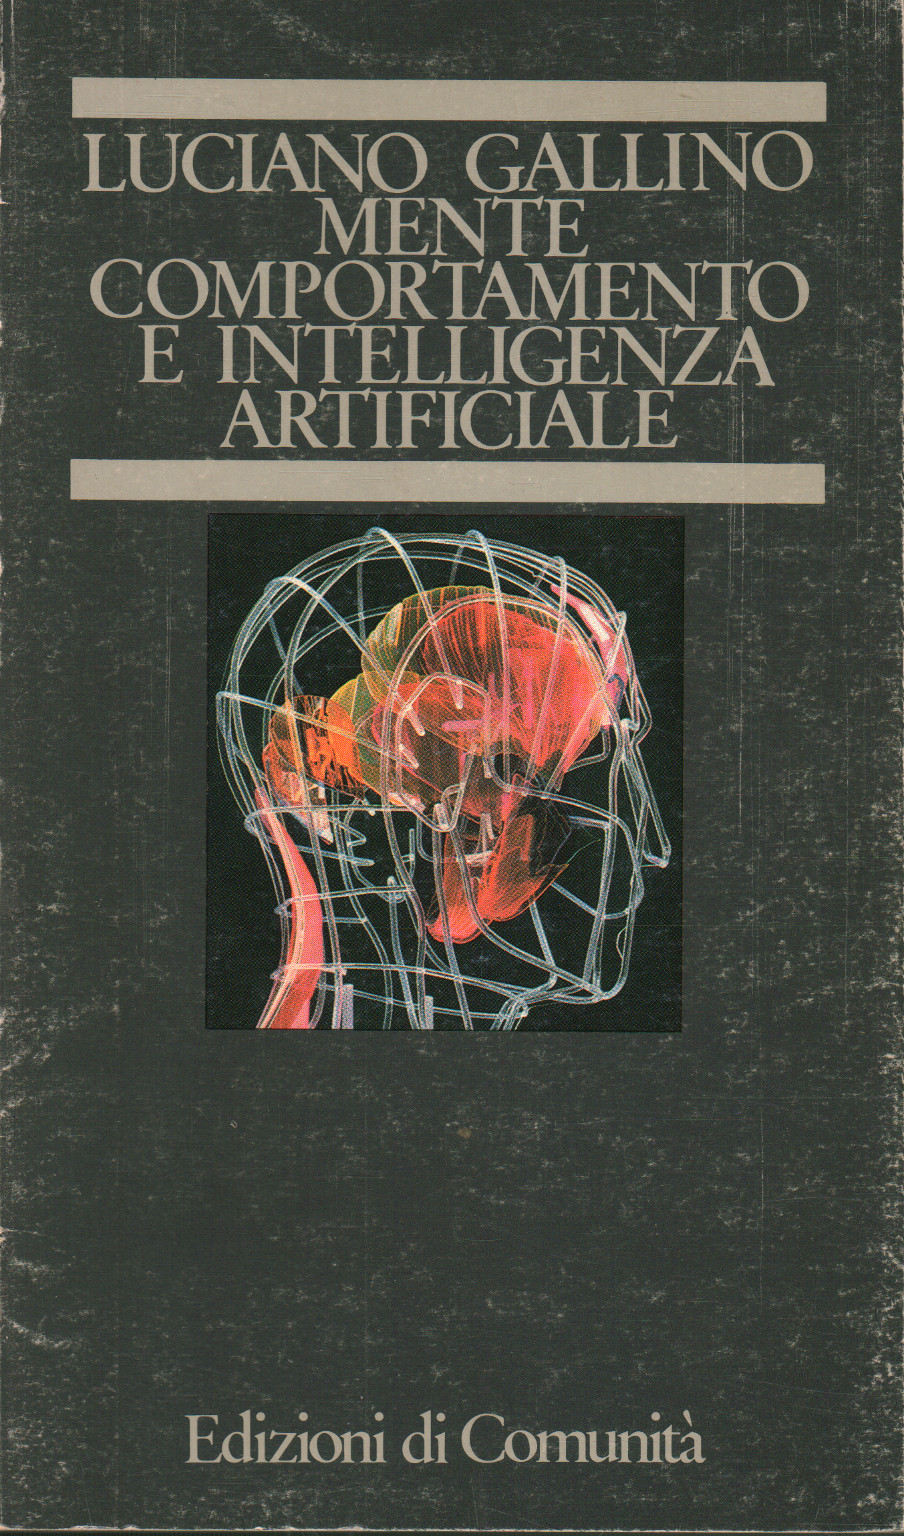 Geist, Verhalten und künstliche Intelligenz, Luciano Gallino